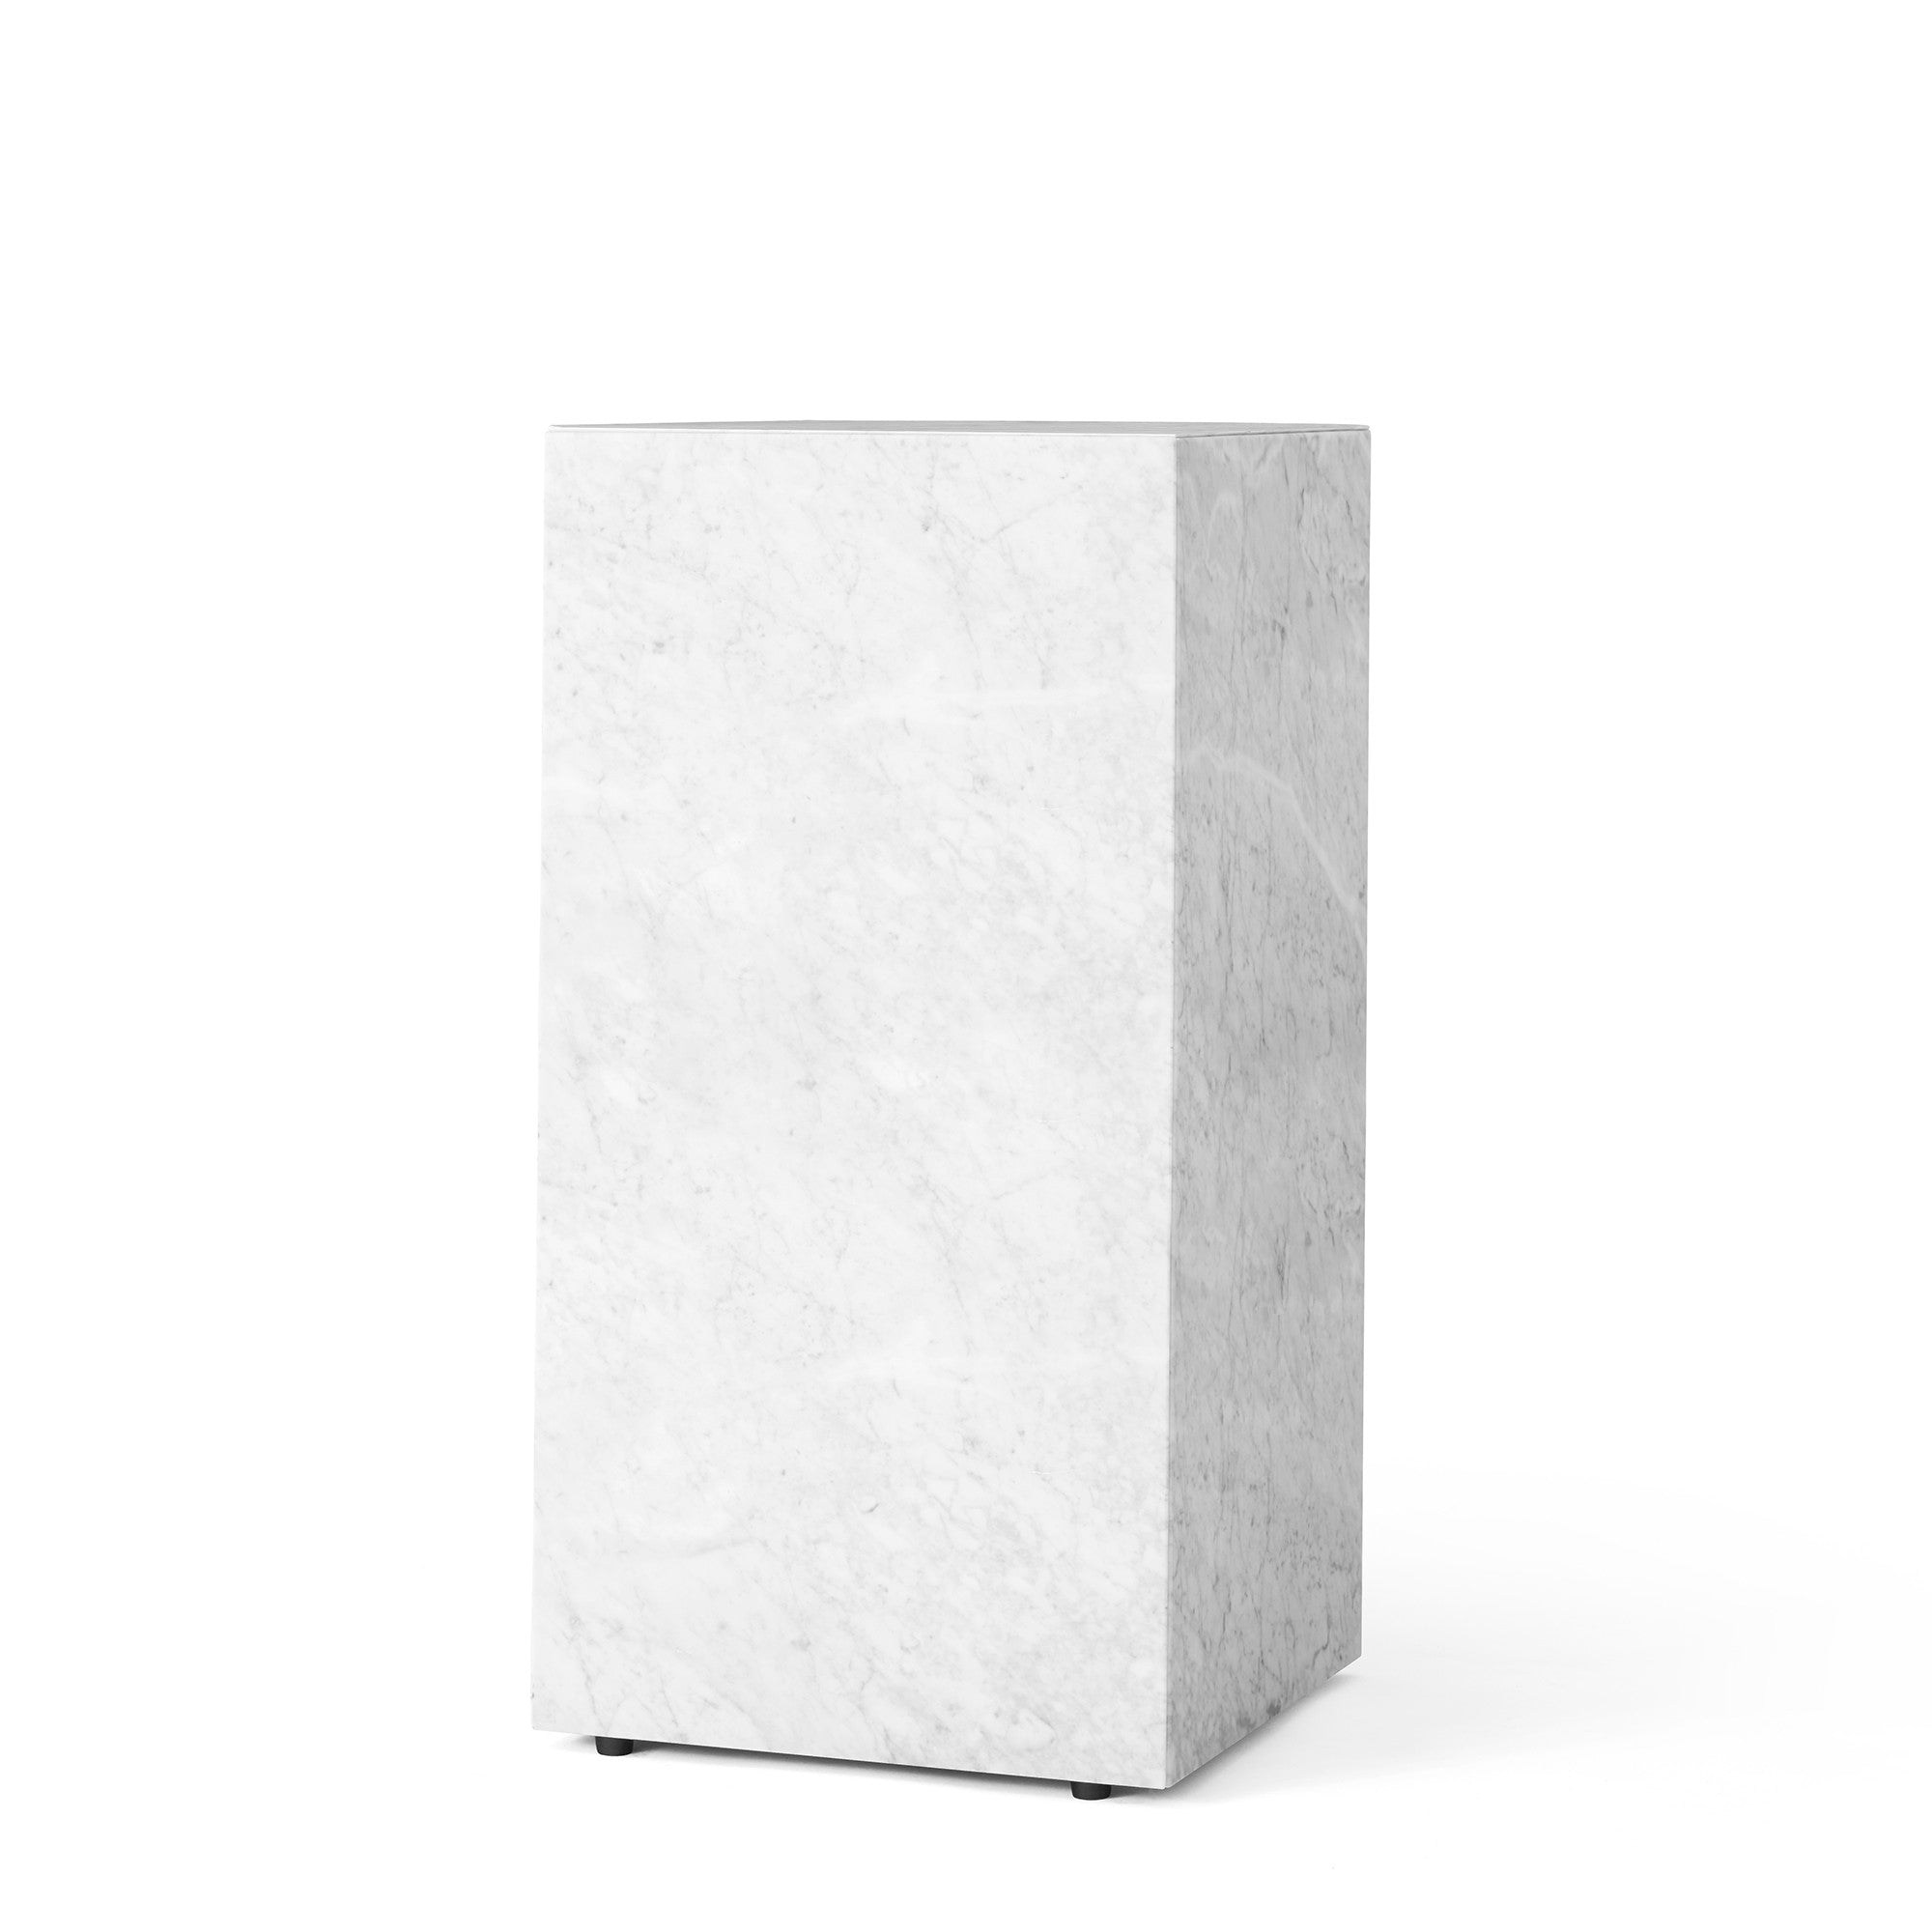 Plinth măsuță rectangulară înaltă